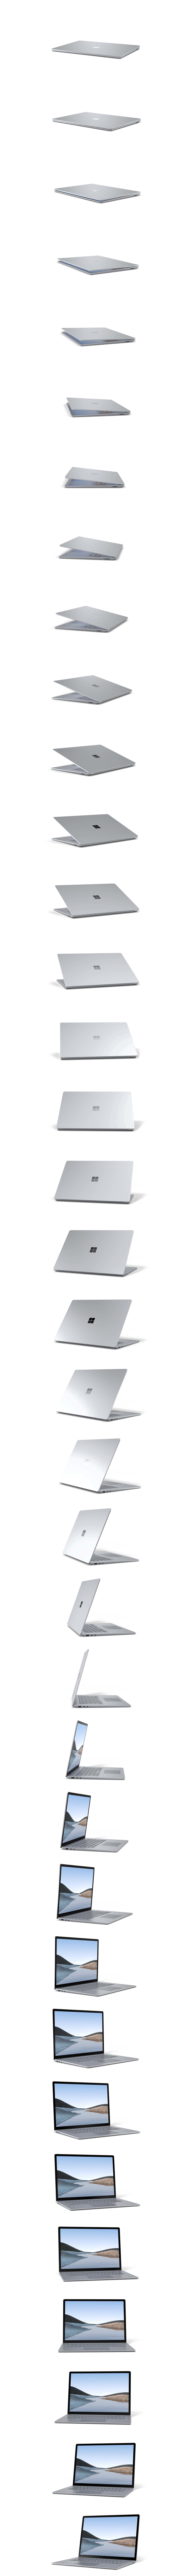 تدوير جهاز Surface Laptop 3 بزاوية 360 درجة